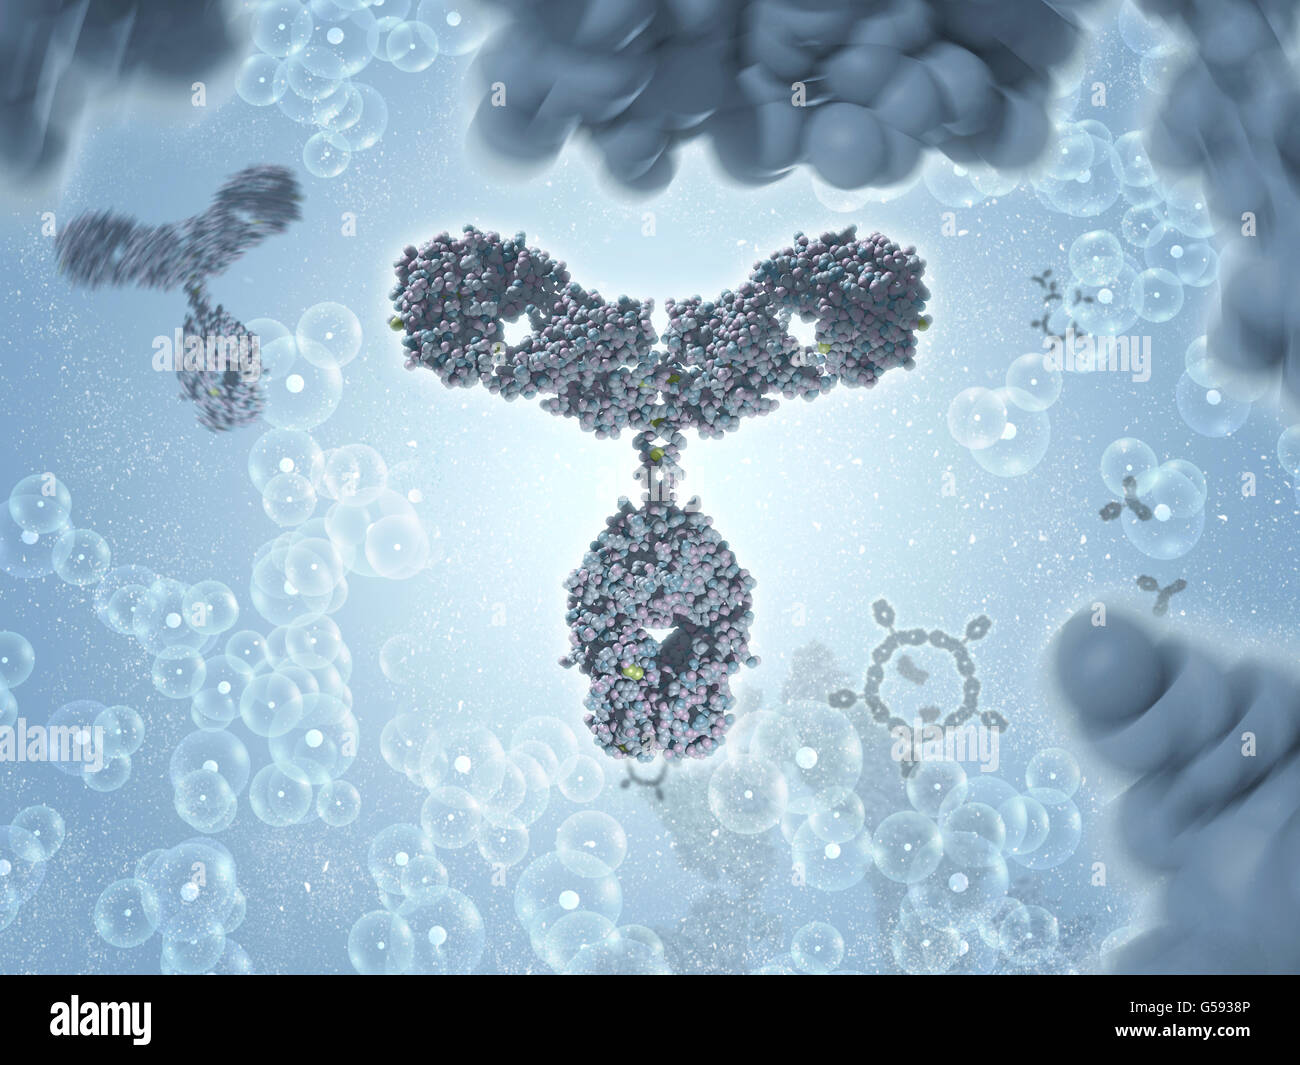 Antikörper aka Immunglobulin G (IgG) ist eine y-förmige Protein und Teil des menschlichen Immunsystems Stockfoto